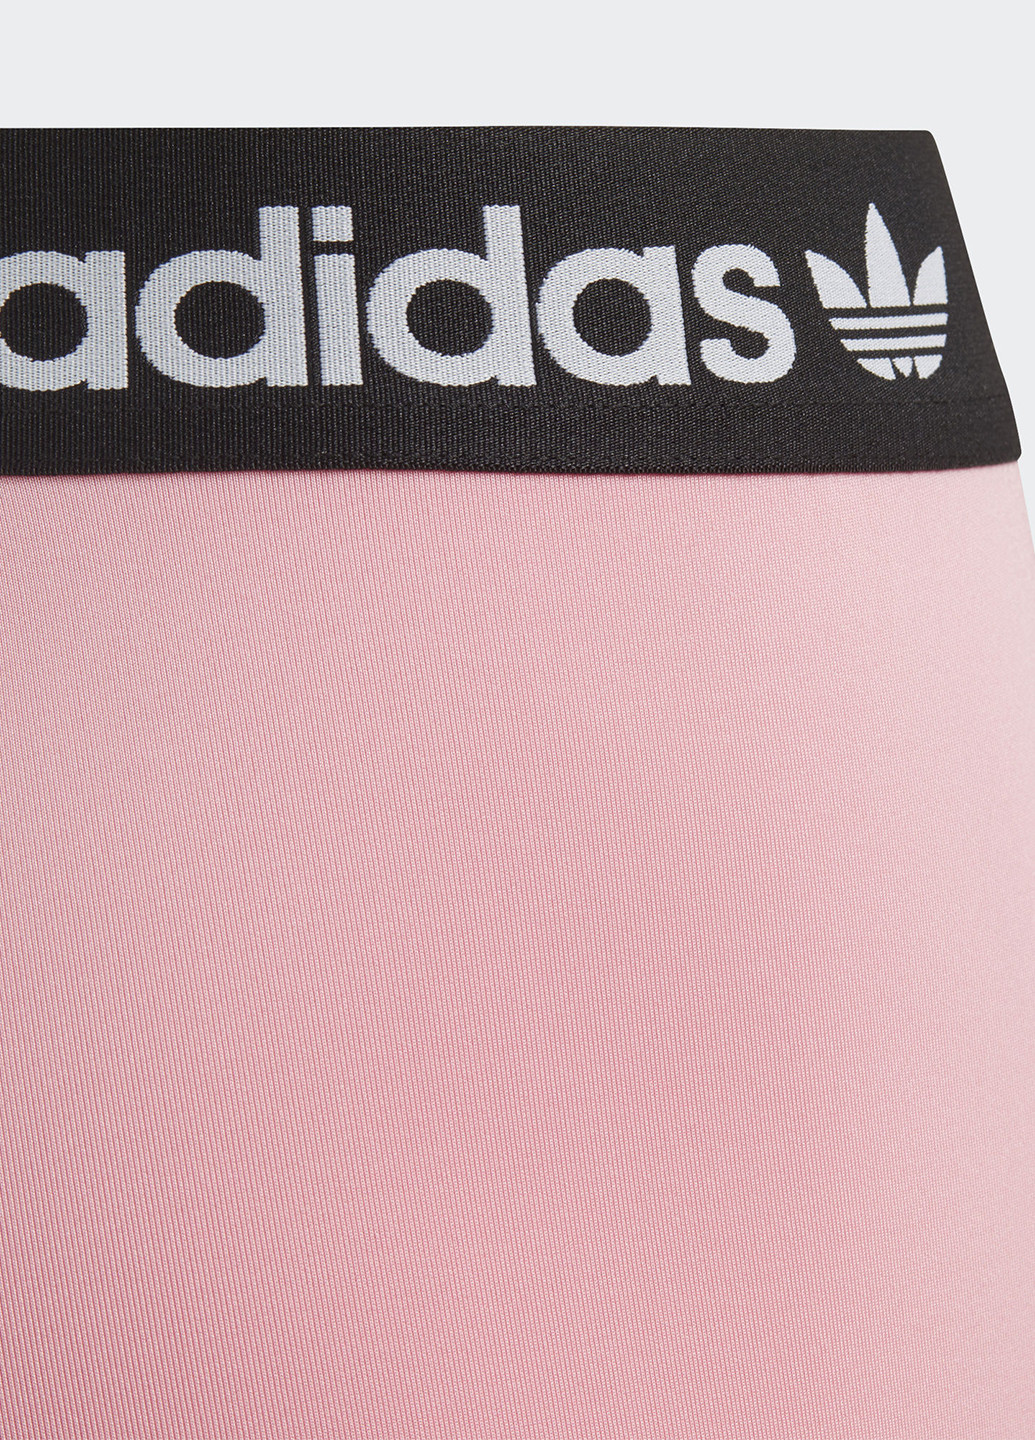 Розовые демисезонные леггинсы adidas